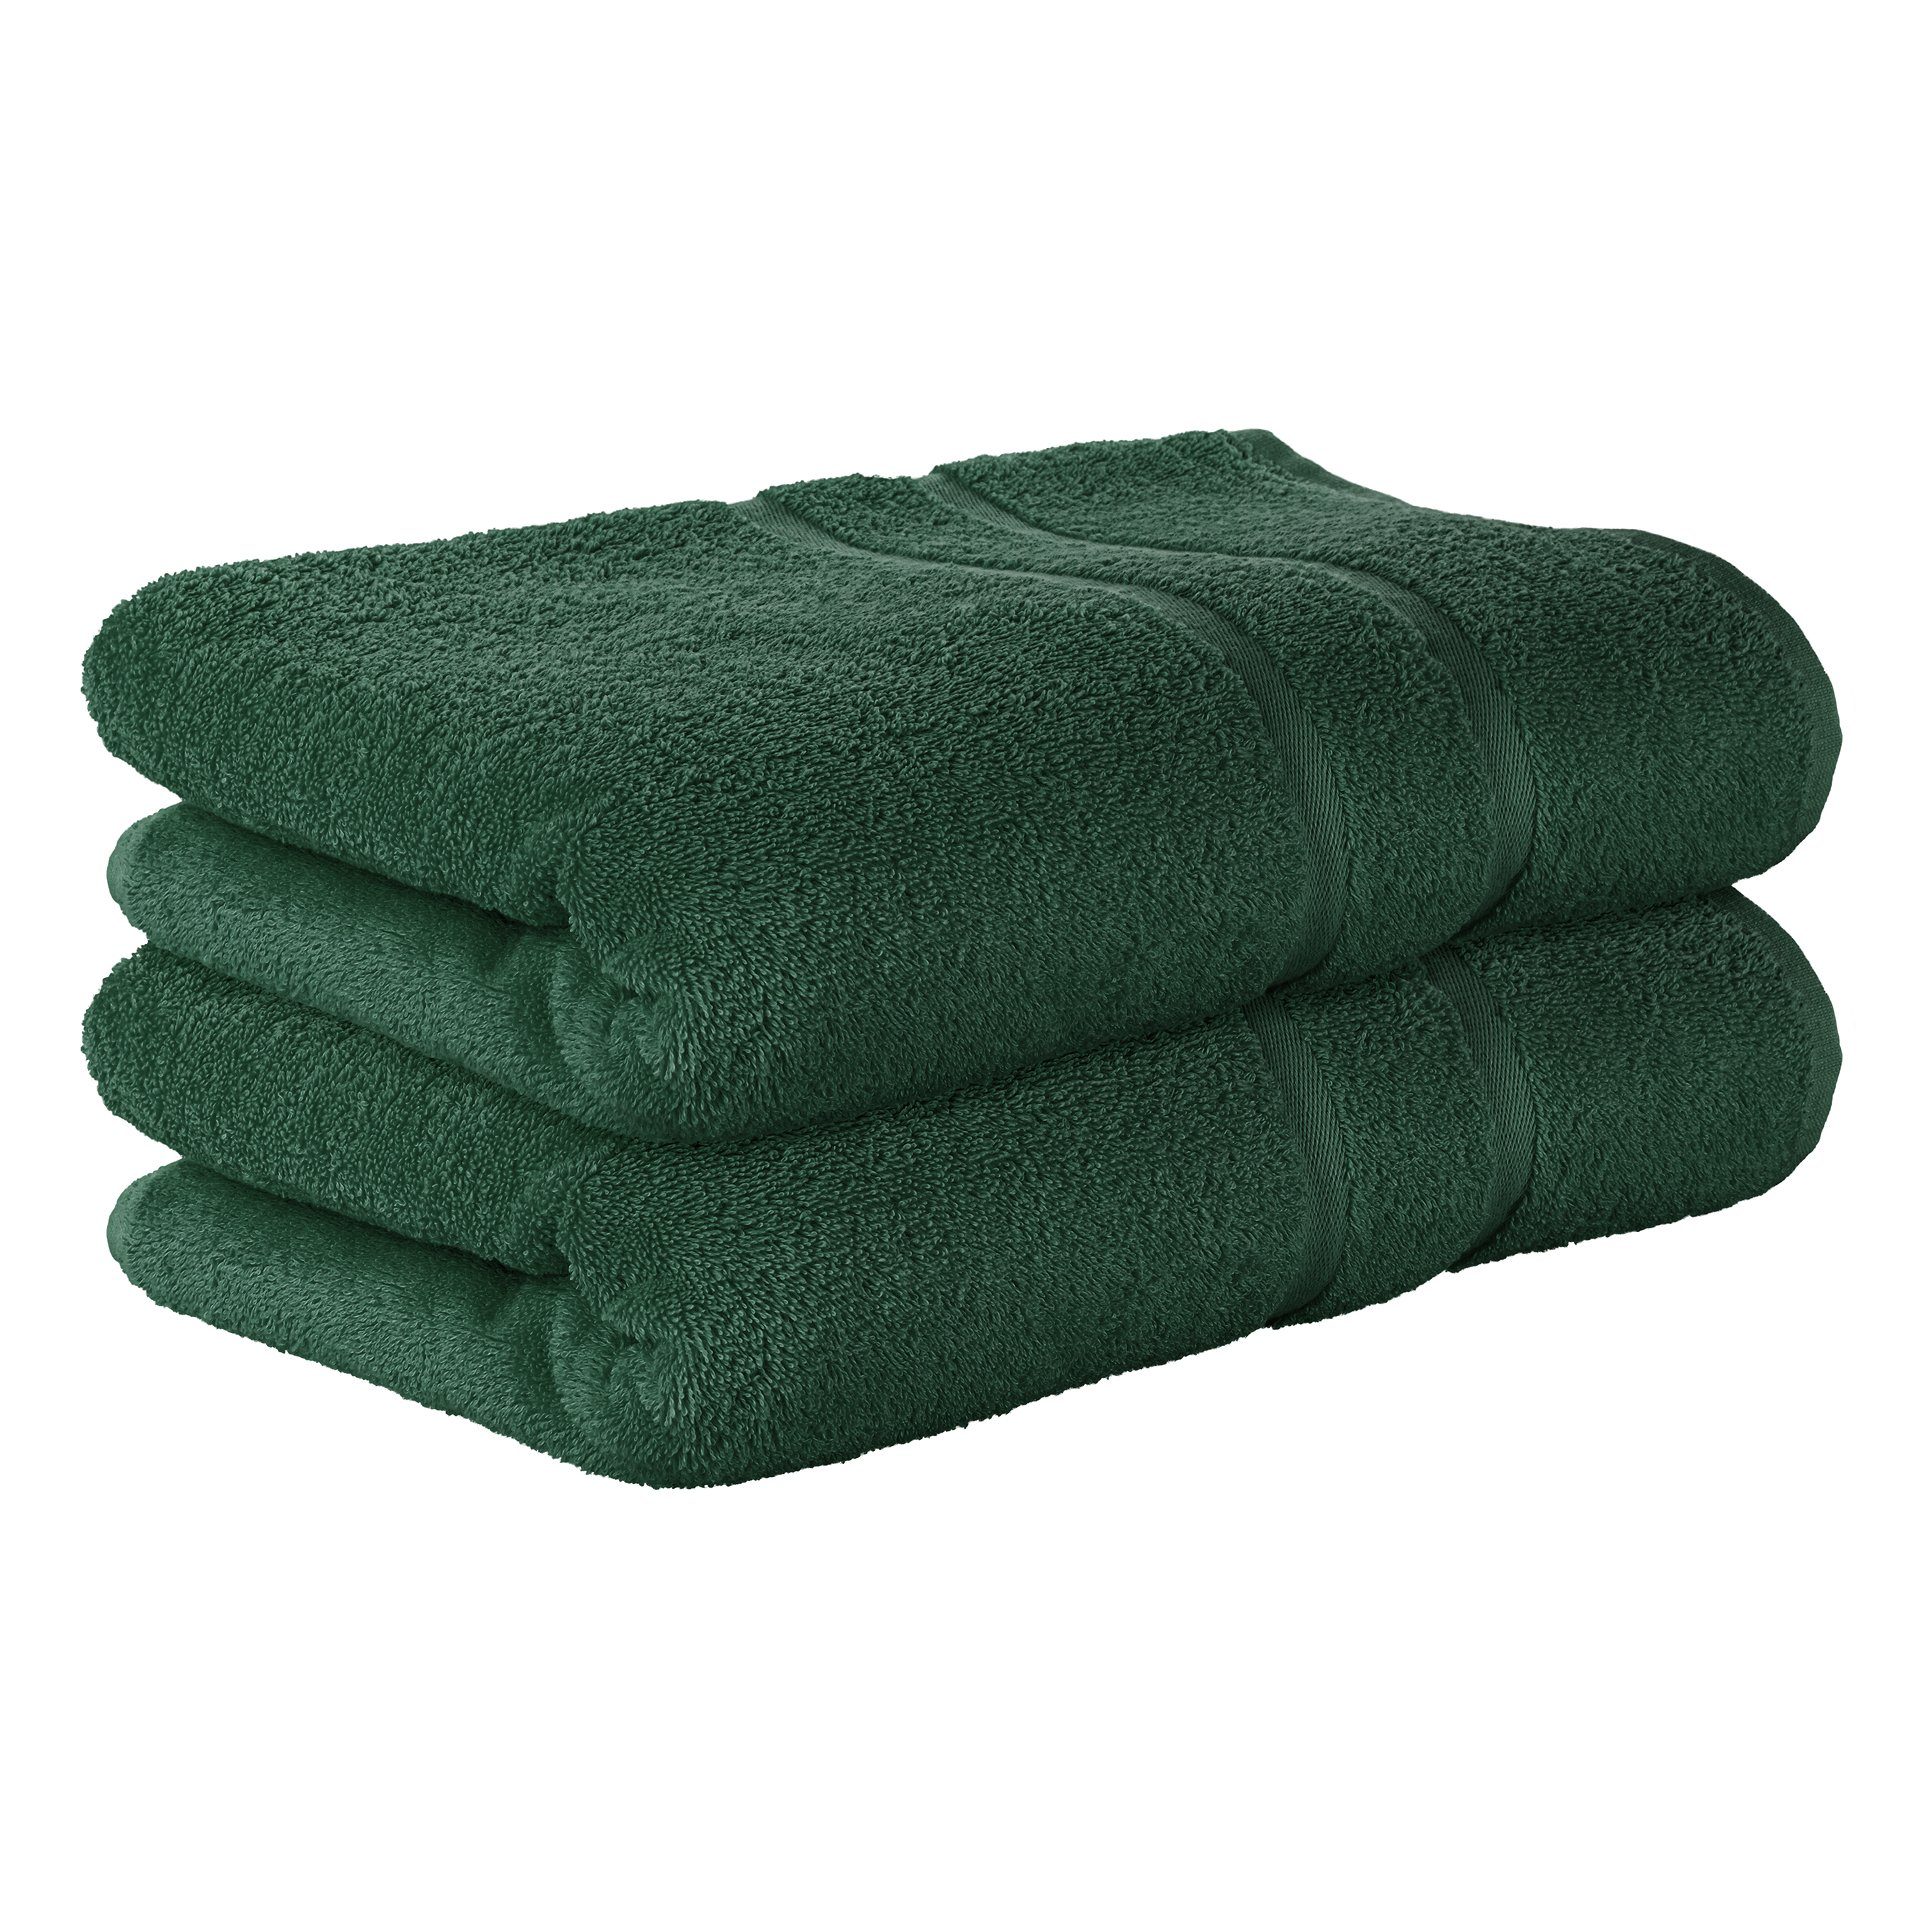 StickandShine Handtuch 2er Set Premium Frottee Handtuch 50x100 cm in 500g/m² aus 100% Baumwolle (2 Stück), 100% Baumwolle 500GSM Frottee Dunkelgrün